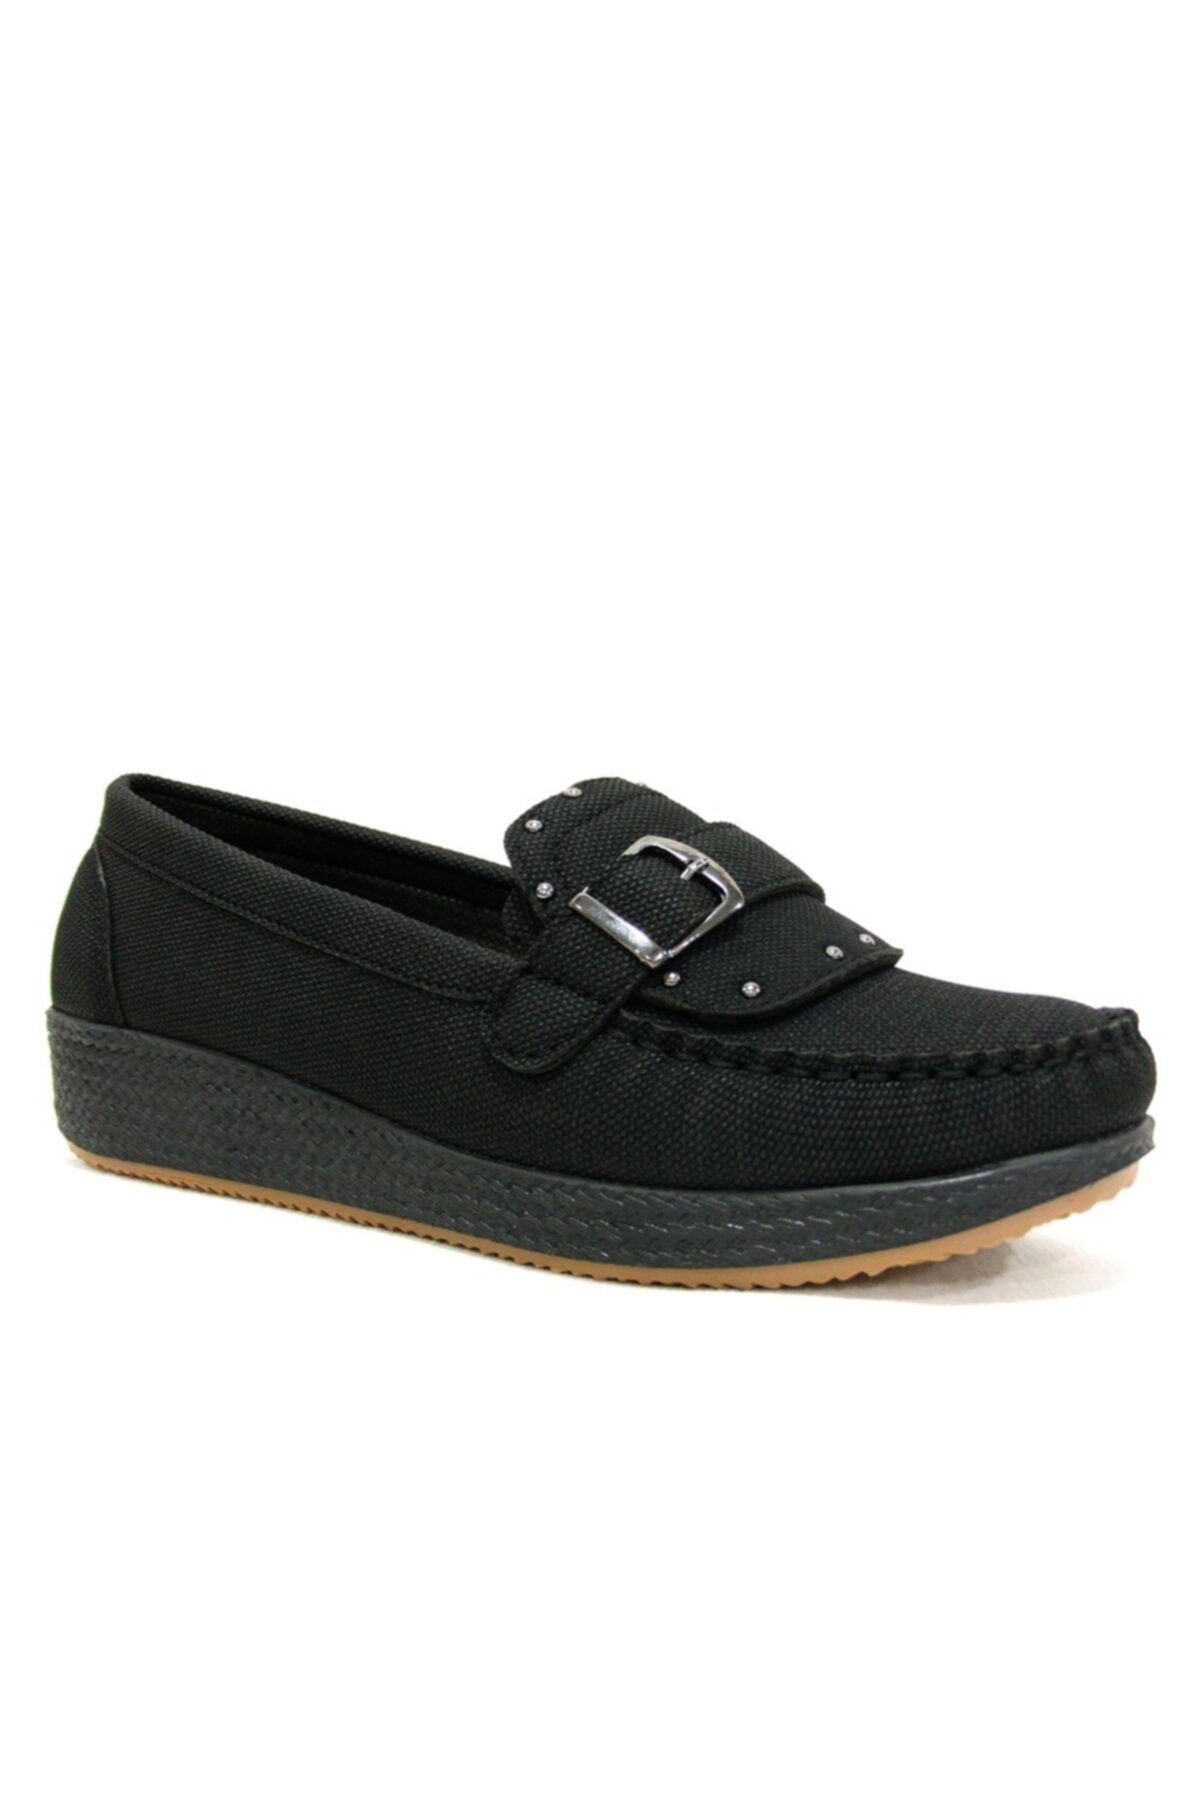 Annamaria Siyah Dolgu Topuk Comfort Ayakkabı